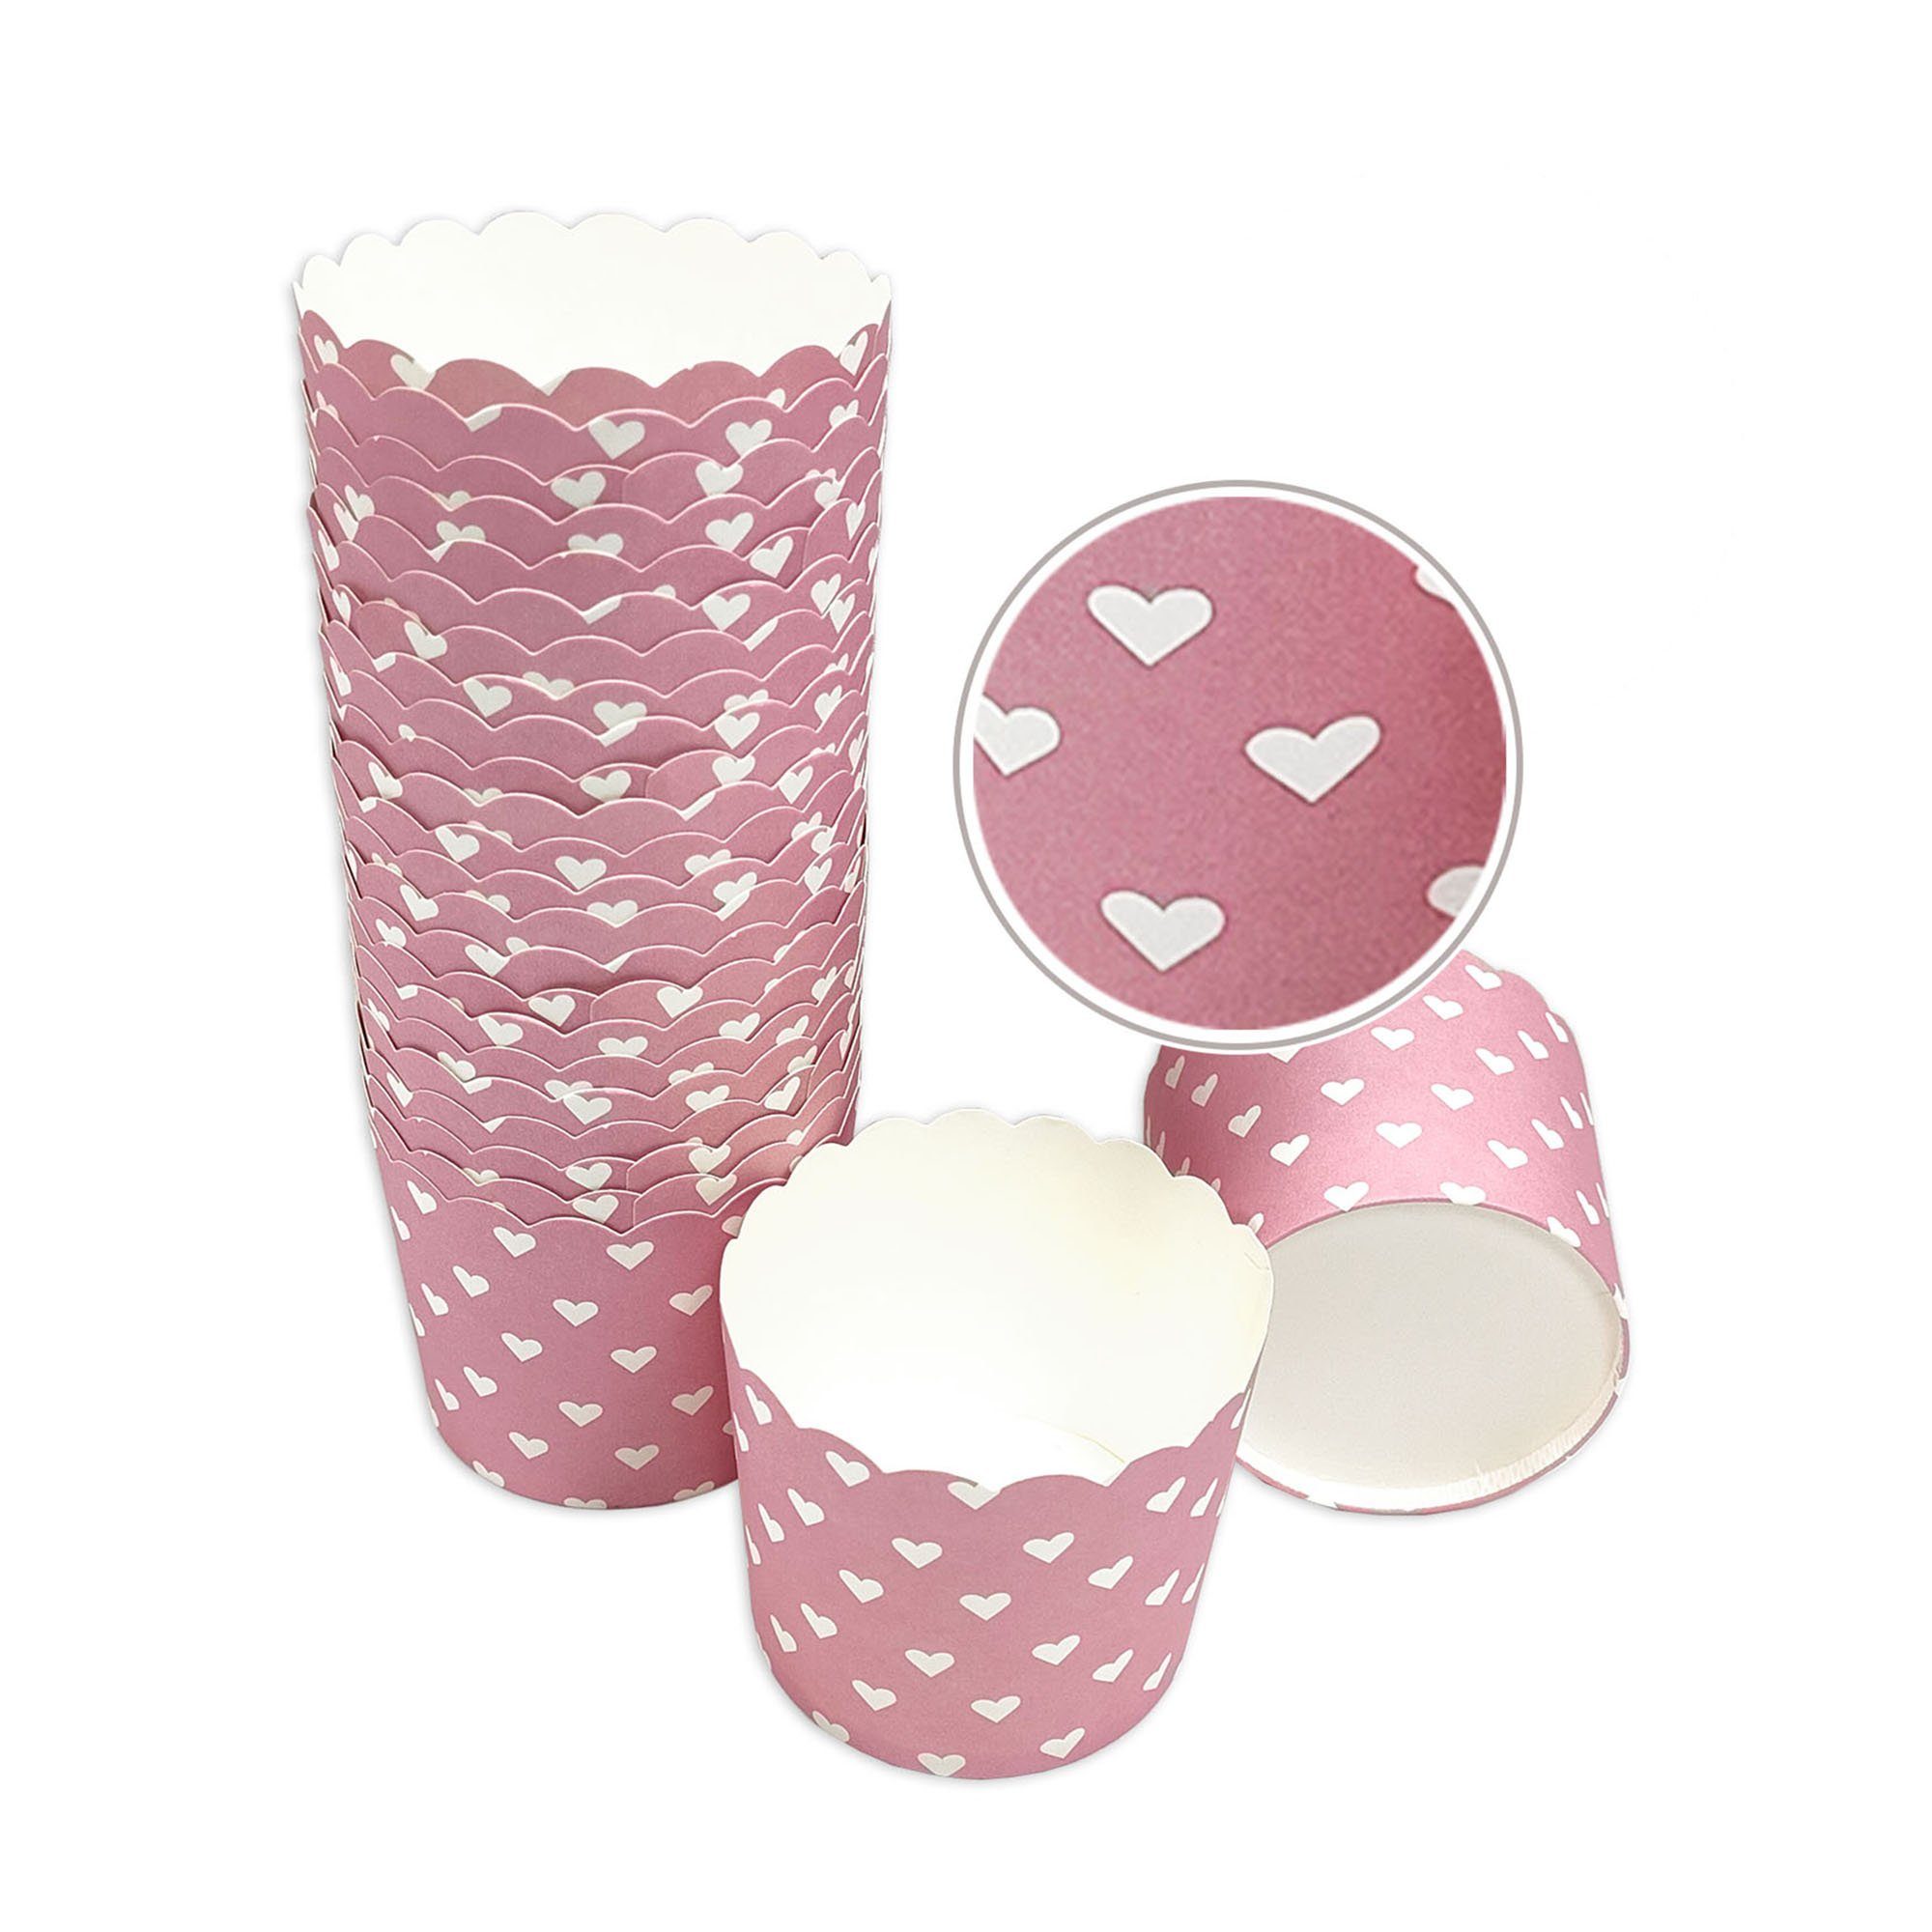 Frau WUNDERVoll Muffinform Muffin Backformen, groß Durchmesser 6,1 cm, rosa, weiße Herzen, Höhe, (25-tlg)